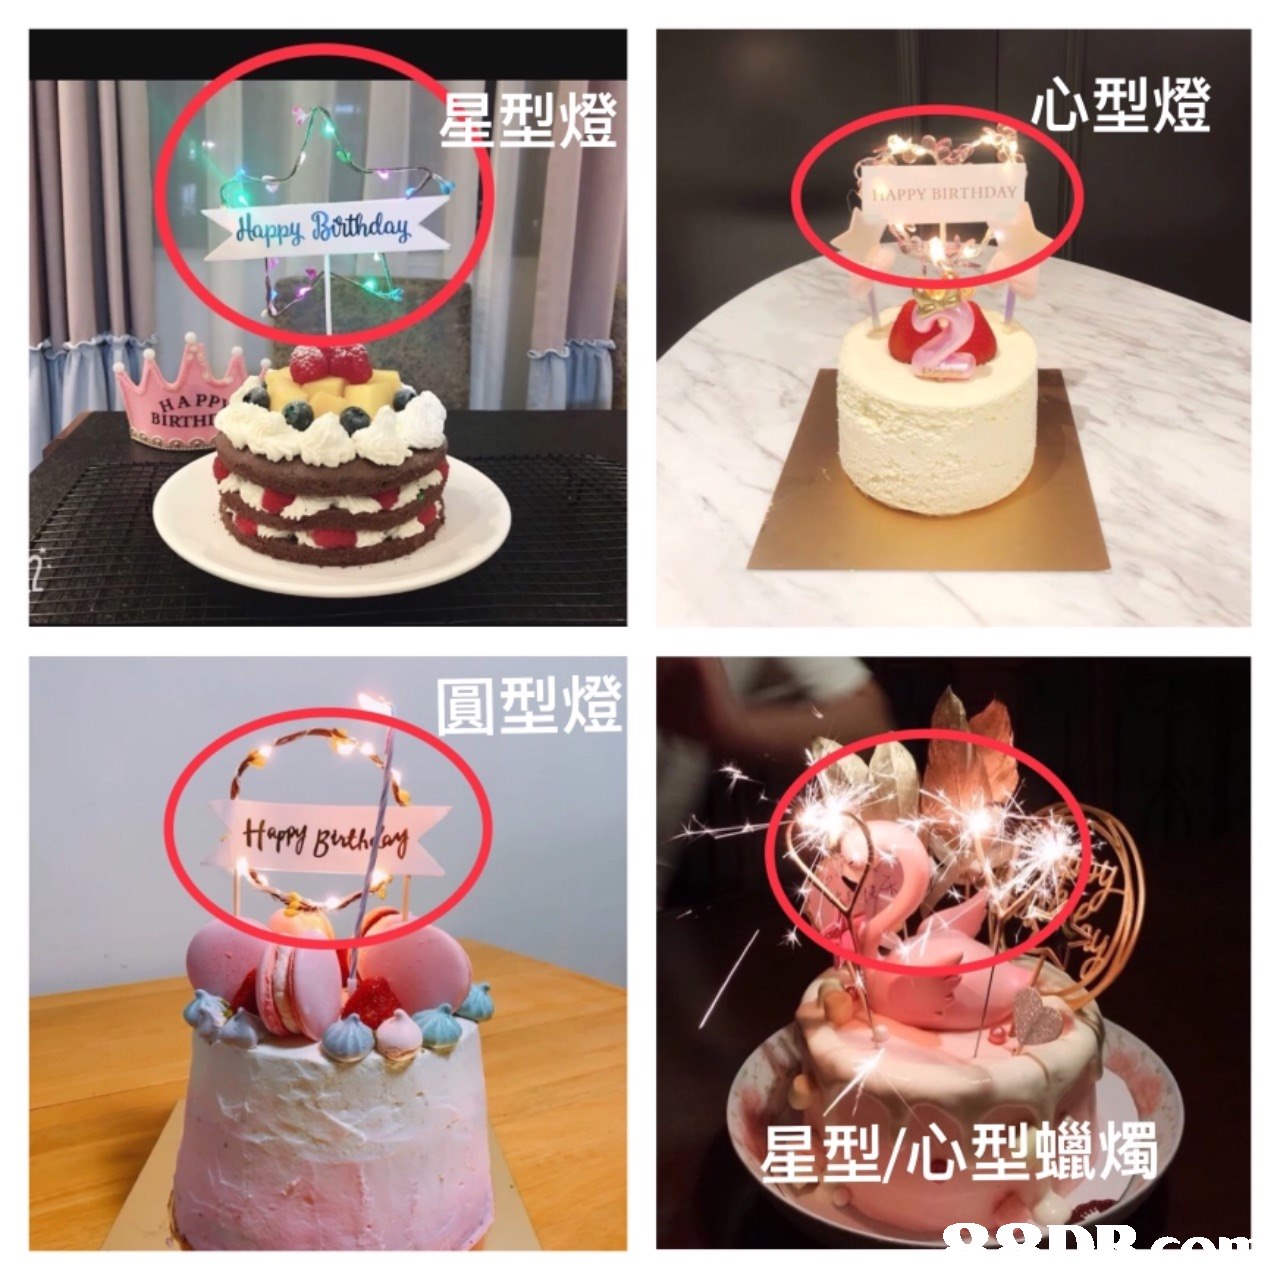 星型燈 心型燈 APPY BIRTHDAY dlappy Bothday BIRTHI 圓型燈 小 星型/心型蠟燭  cake,cake decorating,dessert,buttercream,torte